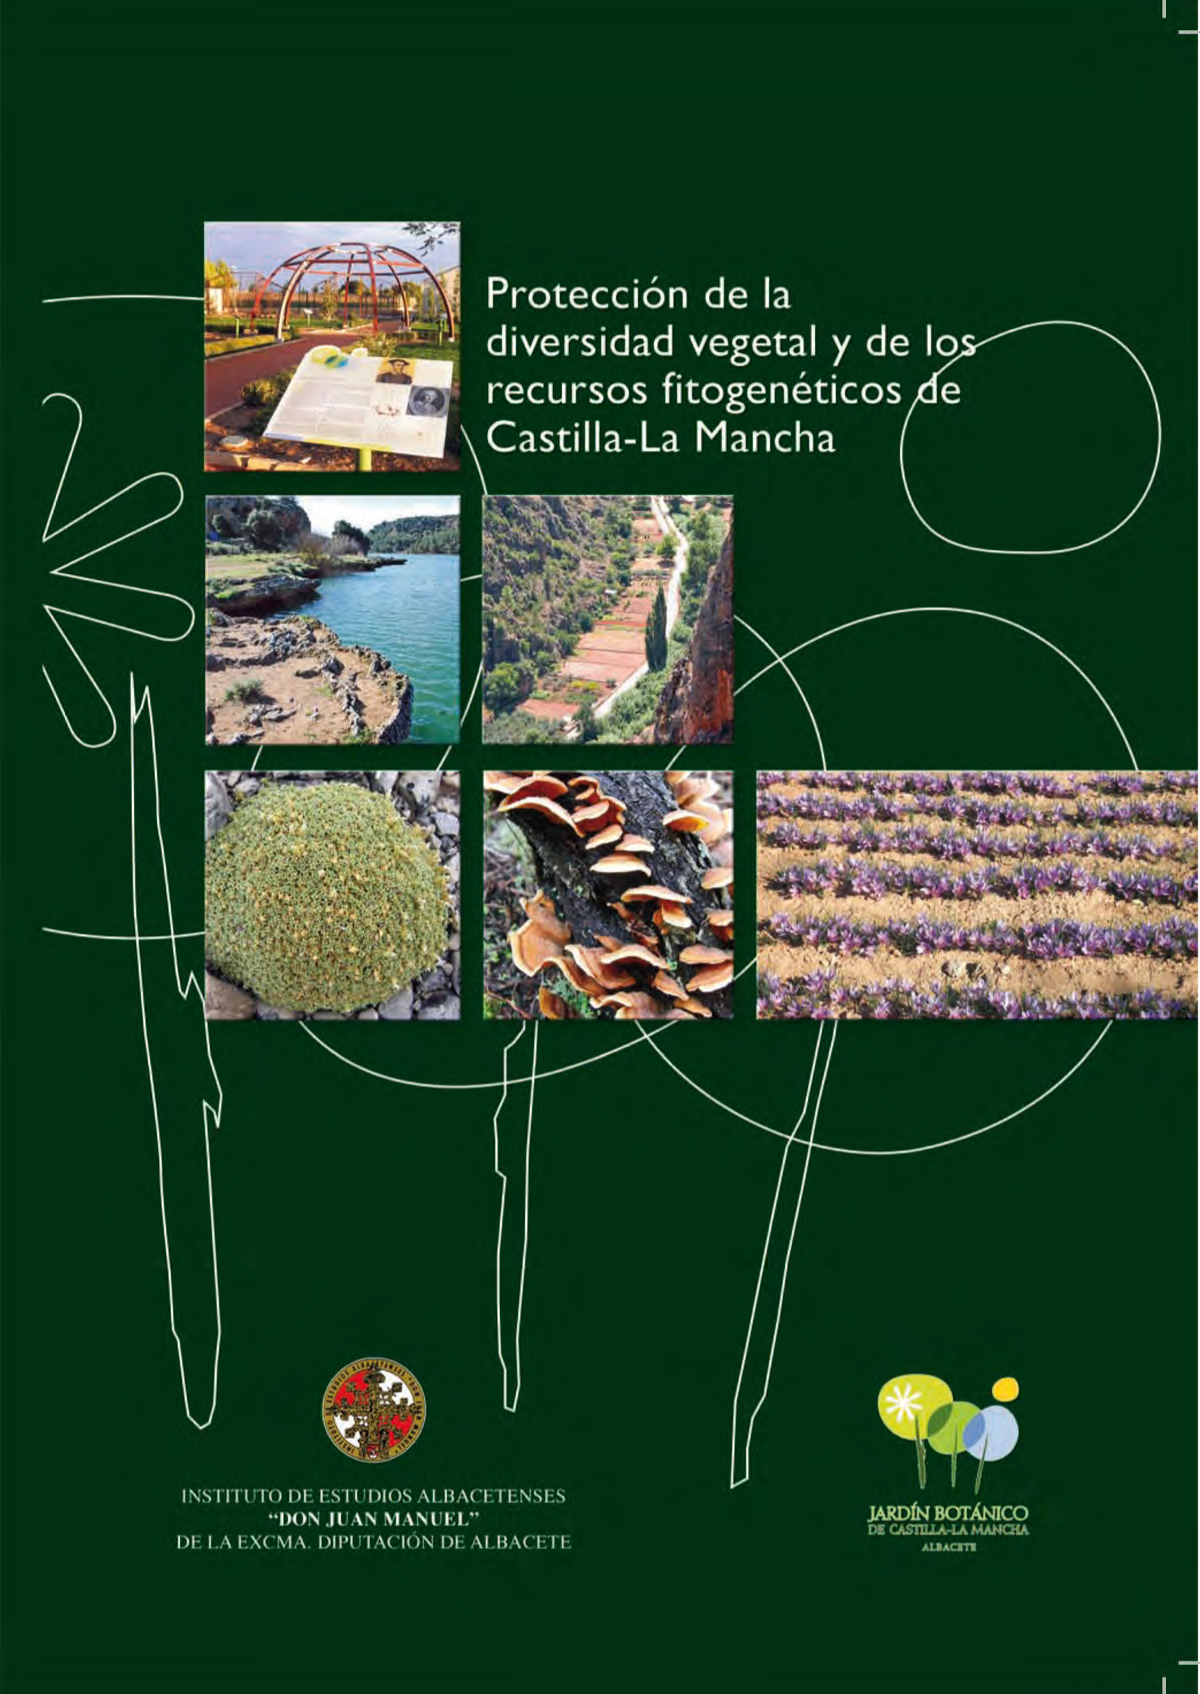 Imagen de portada del libro Protección de la diversidad vegetal y de los recursos fitogenéticos en Castilla-La Mancha